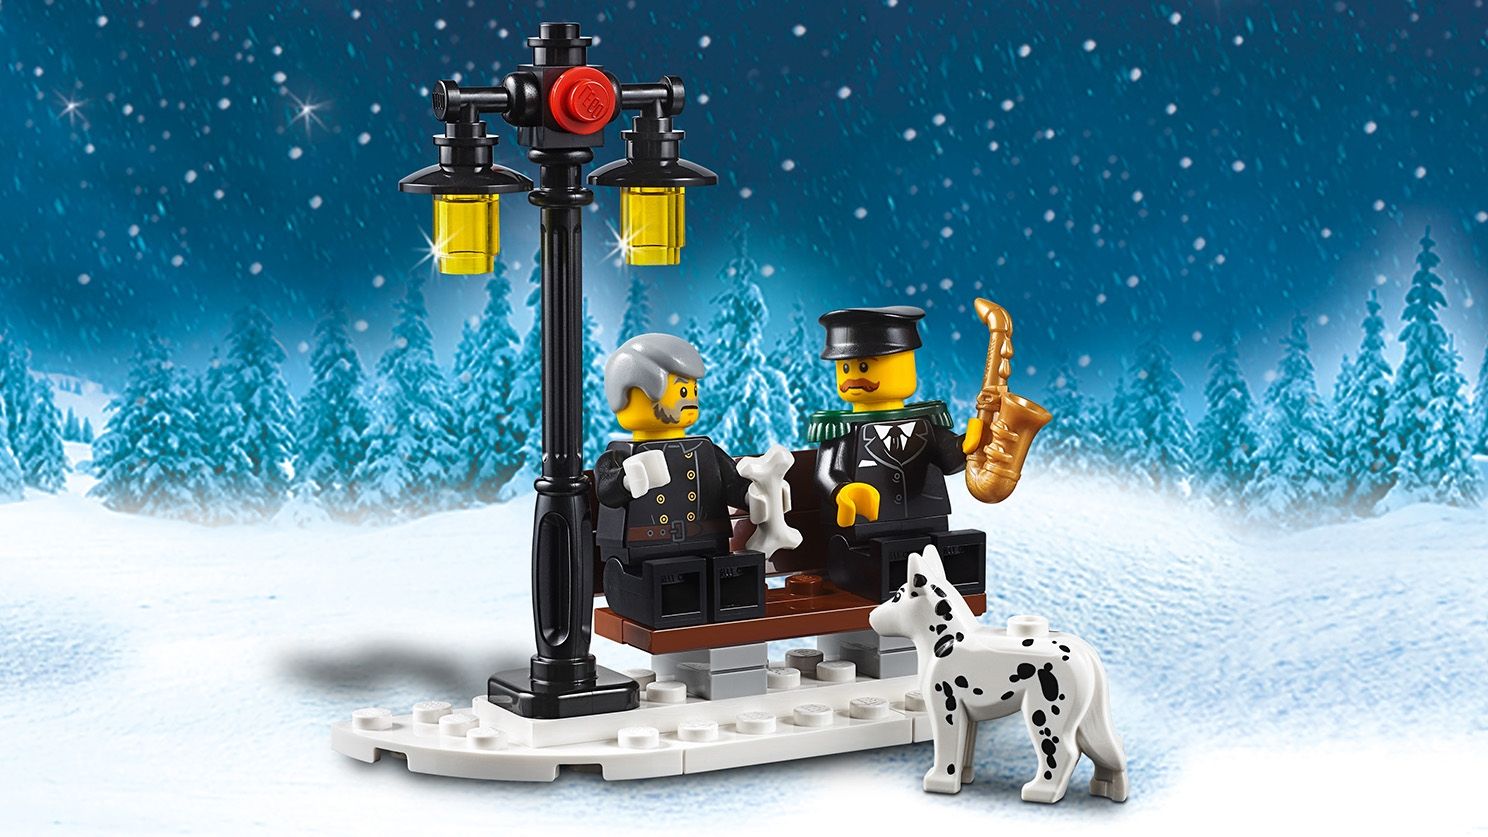 LEGO Advanced Models 10263 Winterliche Feuerwehrstation LEGO_10263_WEB_SEC03_1488.jpg